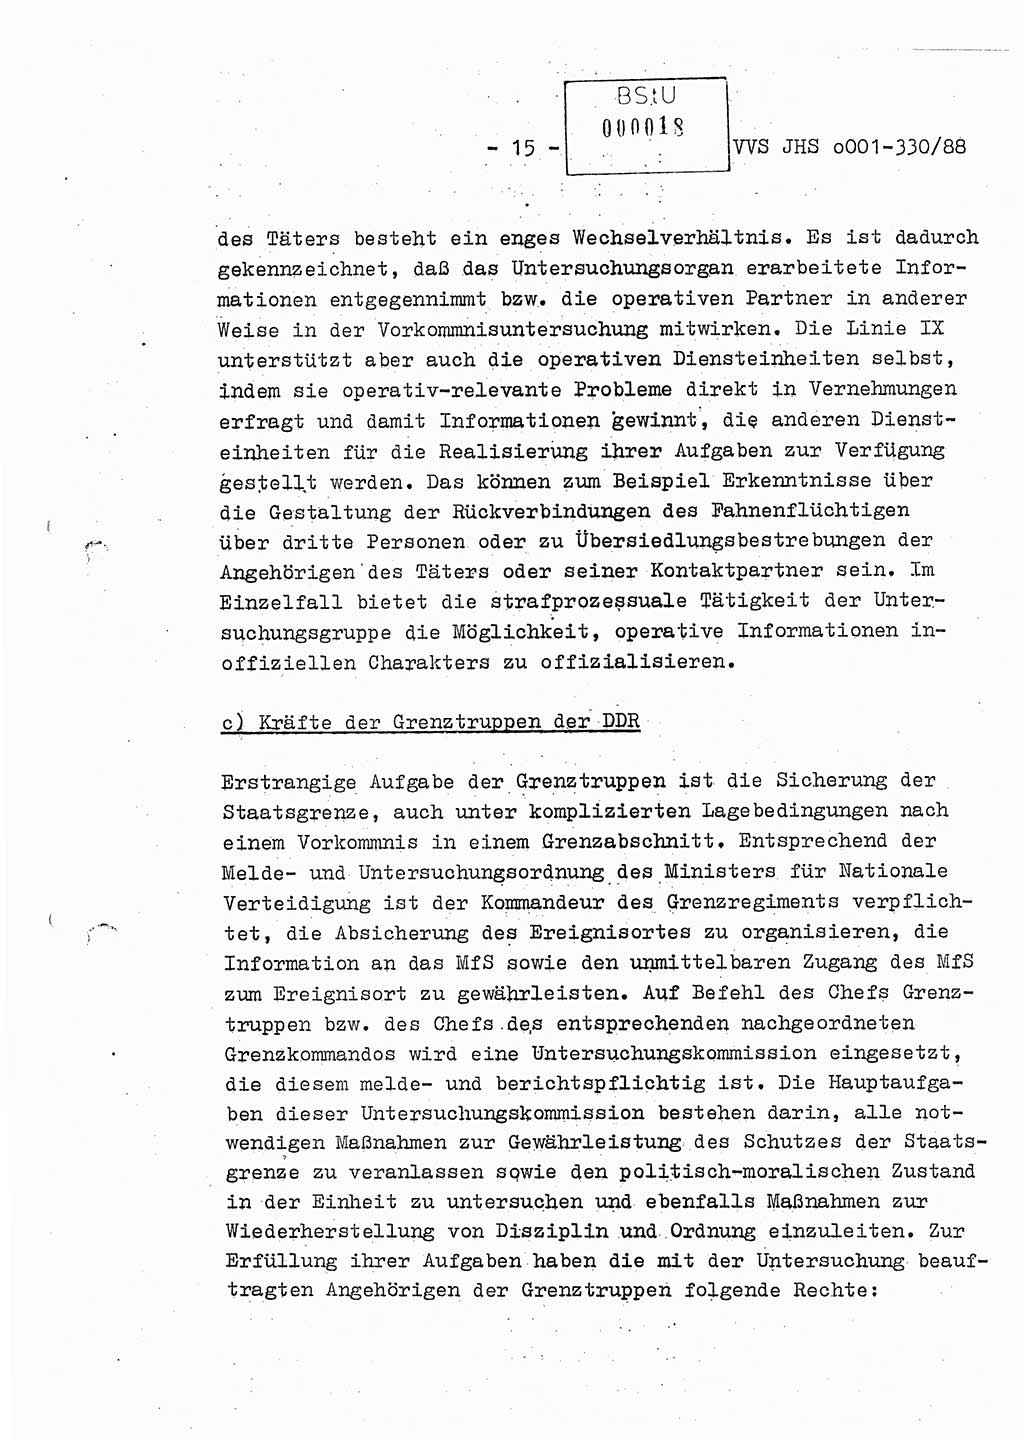 Diplomarbeit Offiziersschüler Thomas Mühle (HA Ⅸ/6), Ministerium für Staatssicherheit (MfS) [Deutsche Demokratische Republik (DDR)], Juristische Hochschule (JHS), Vertrauliche Verschlußsache (VVS) o001-330/88, Potsdam 1988, Seite 15 (Dipl.-Arb. MfS DDR JHS VVS o001-330/88 1988, S. 15)